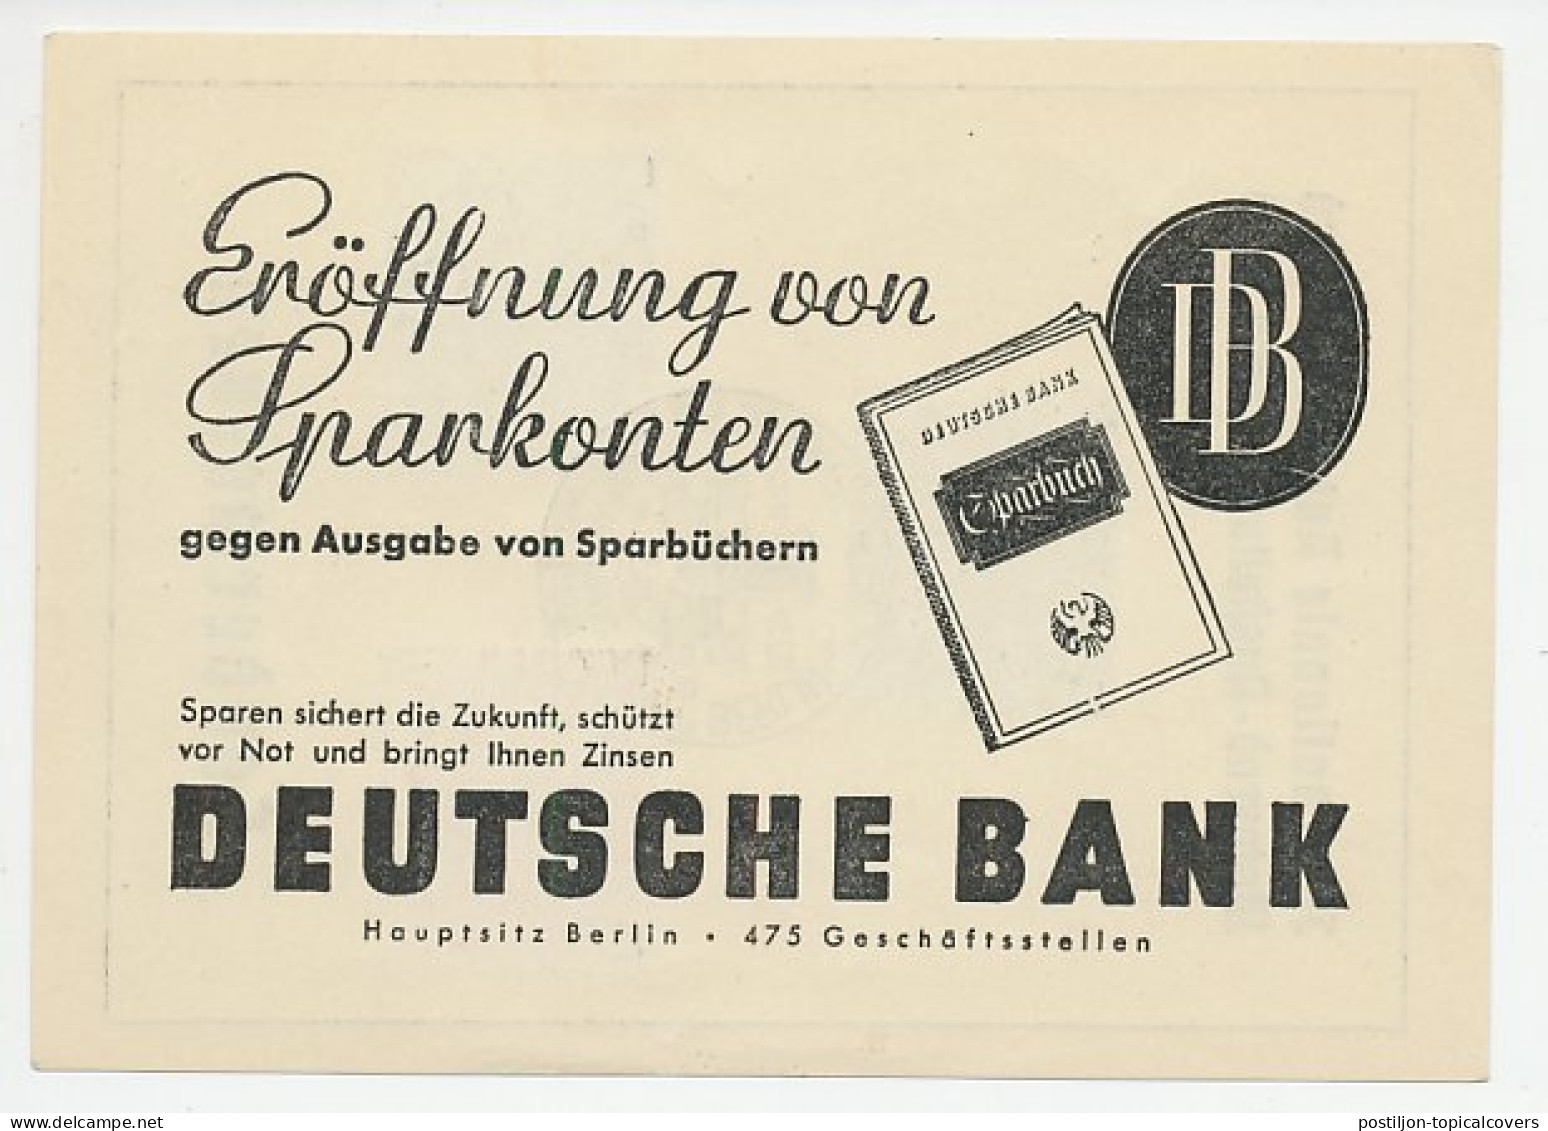 Card / Postmark Deutsches Reich / Germany 1939 Car Exhibition  - Automobili